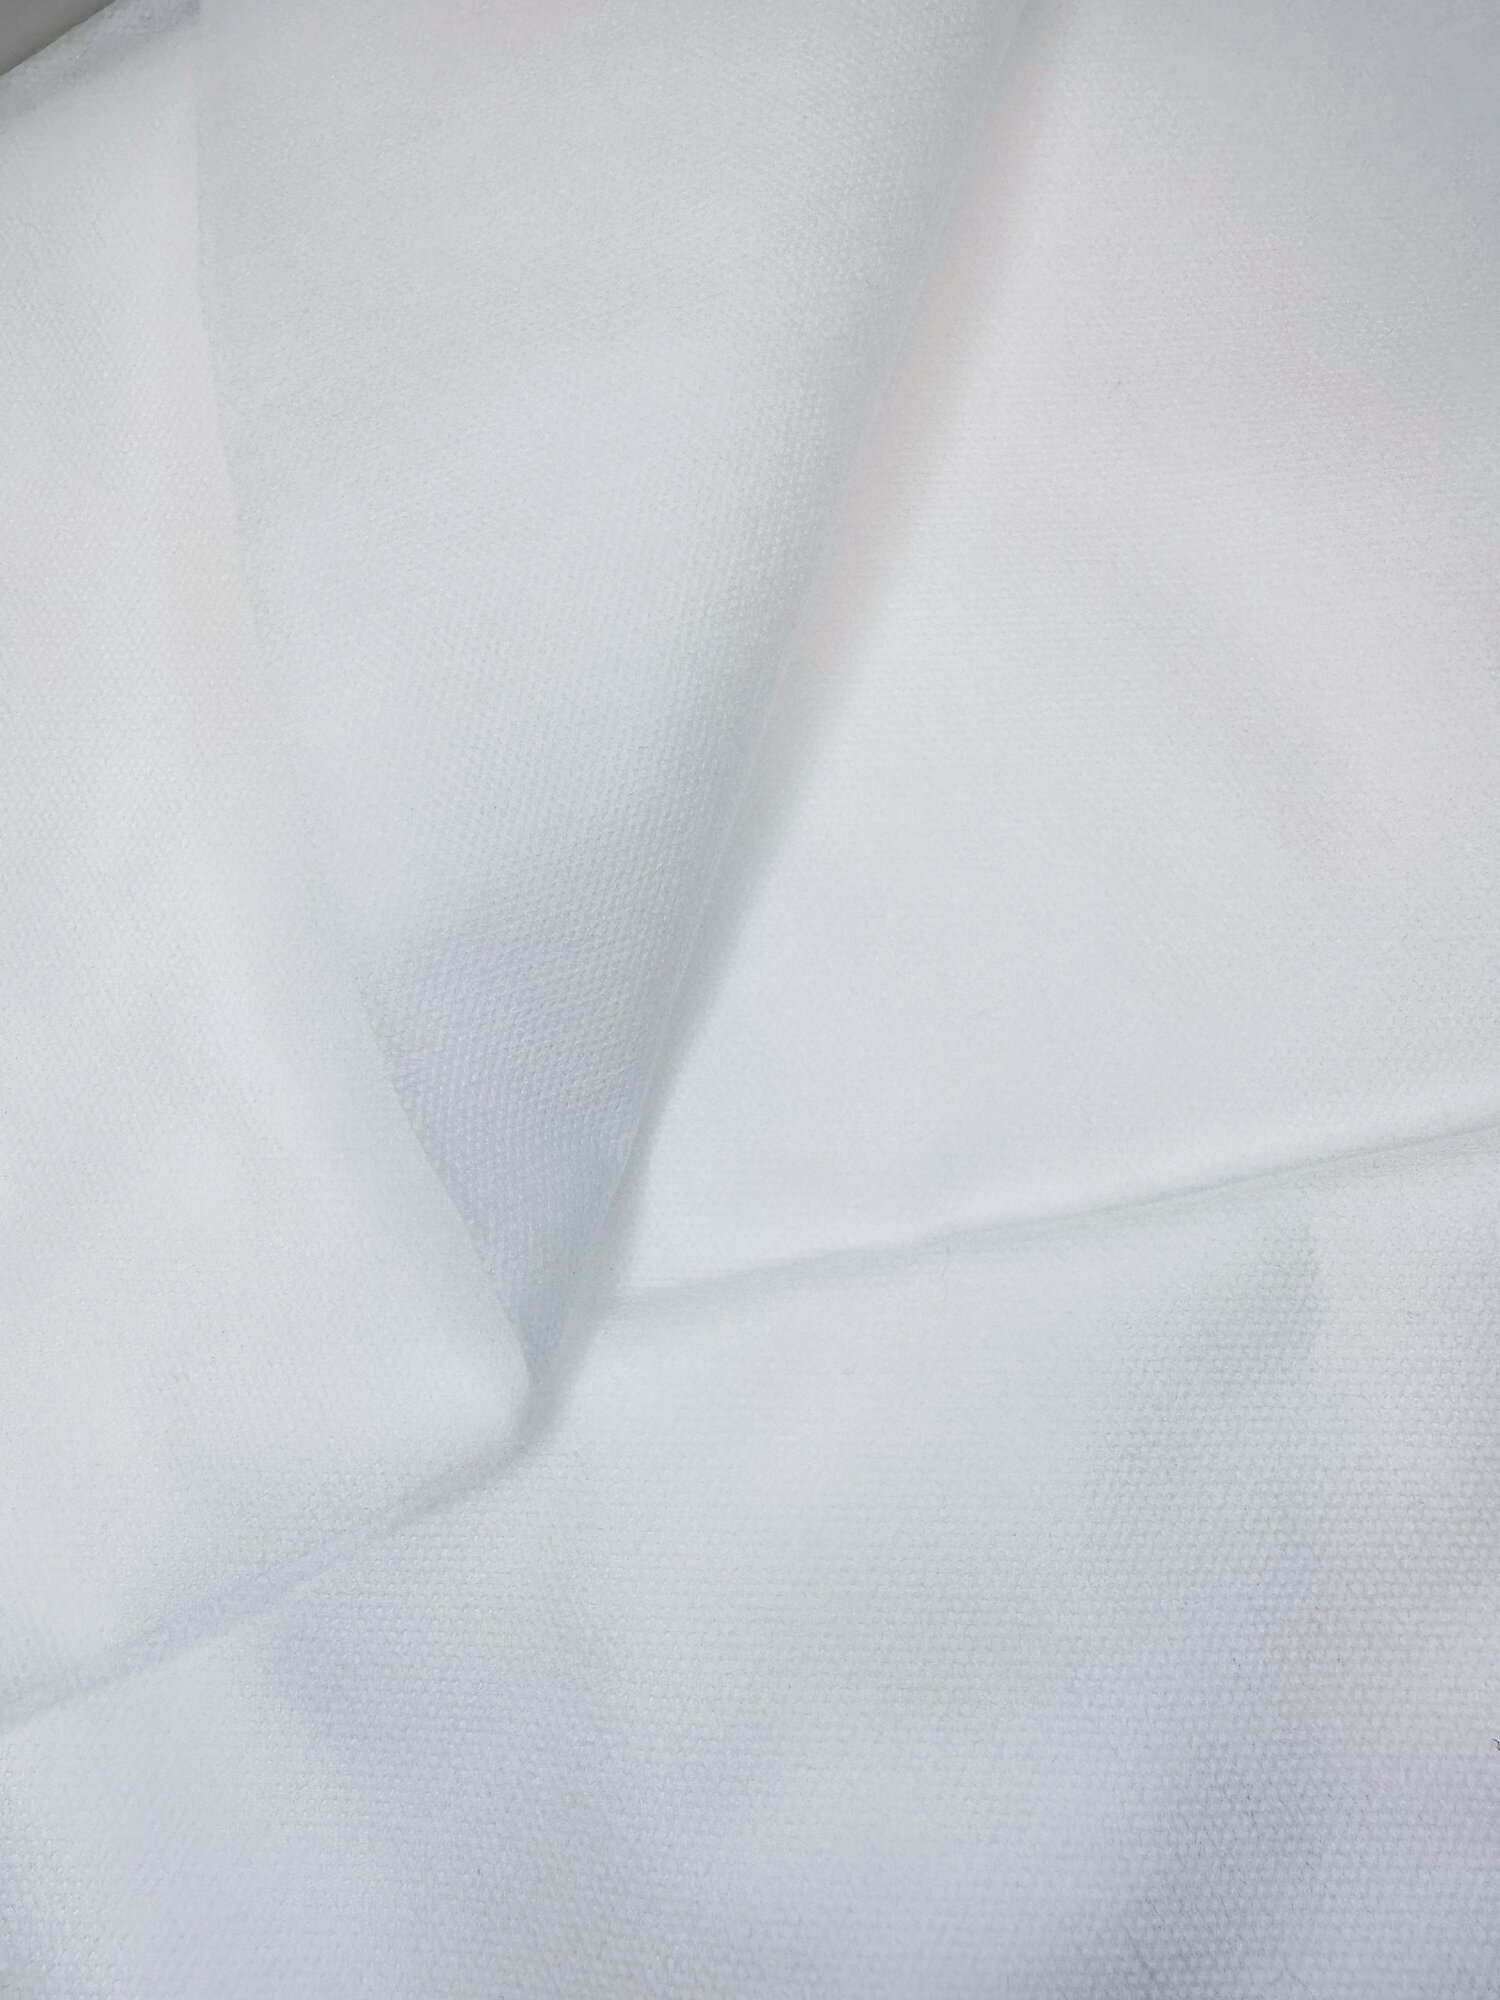 Спанбонд укрывной нетканый материал СУФ 60 г/м2 белый ширина 3,2 - 10 м